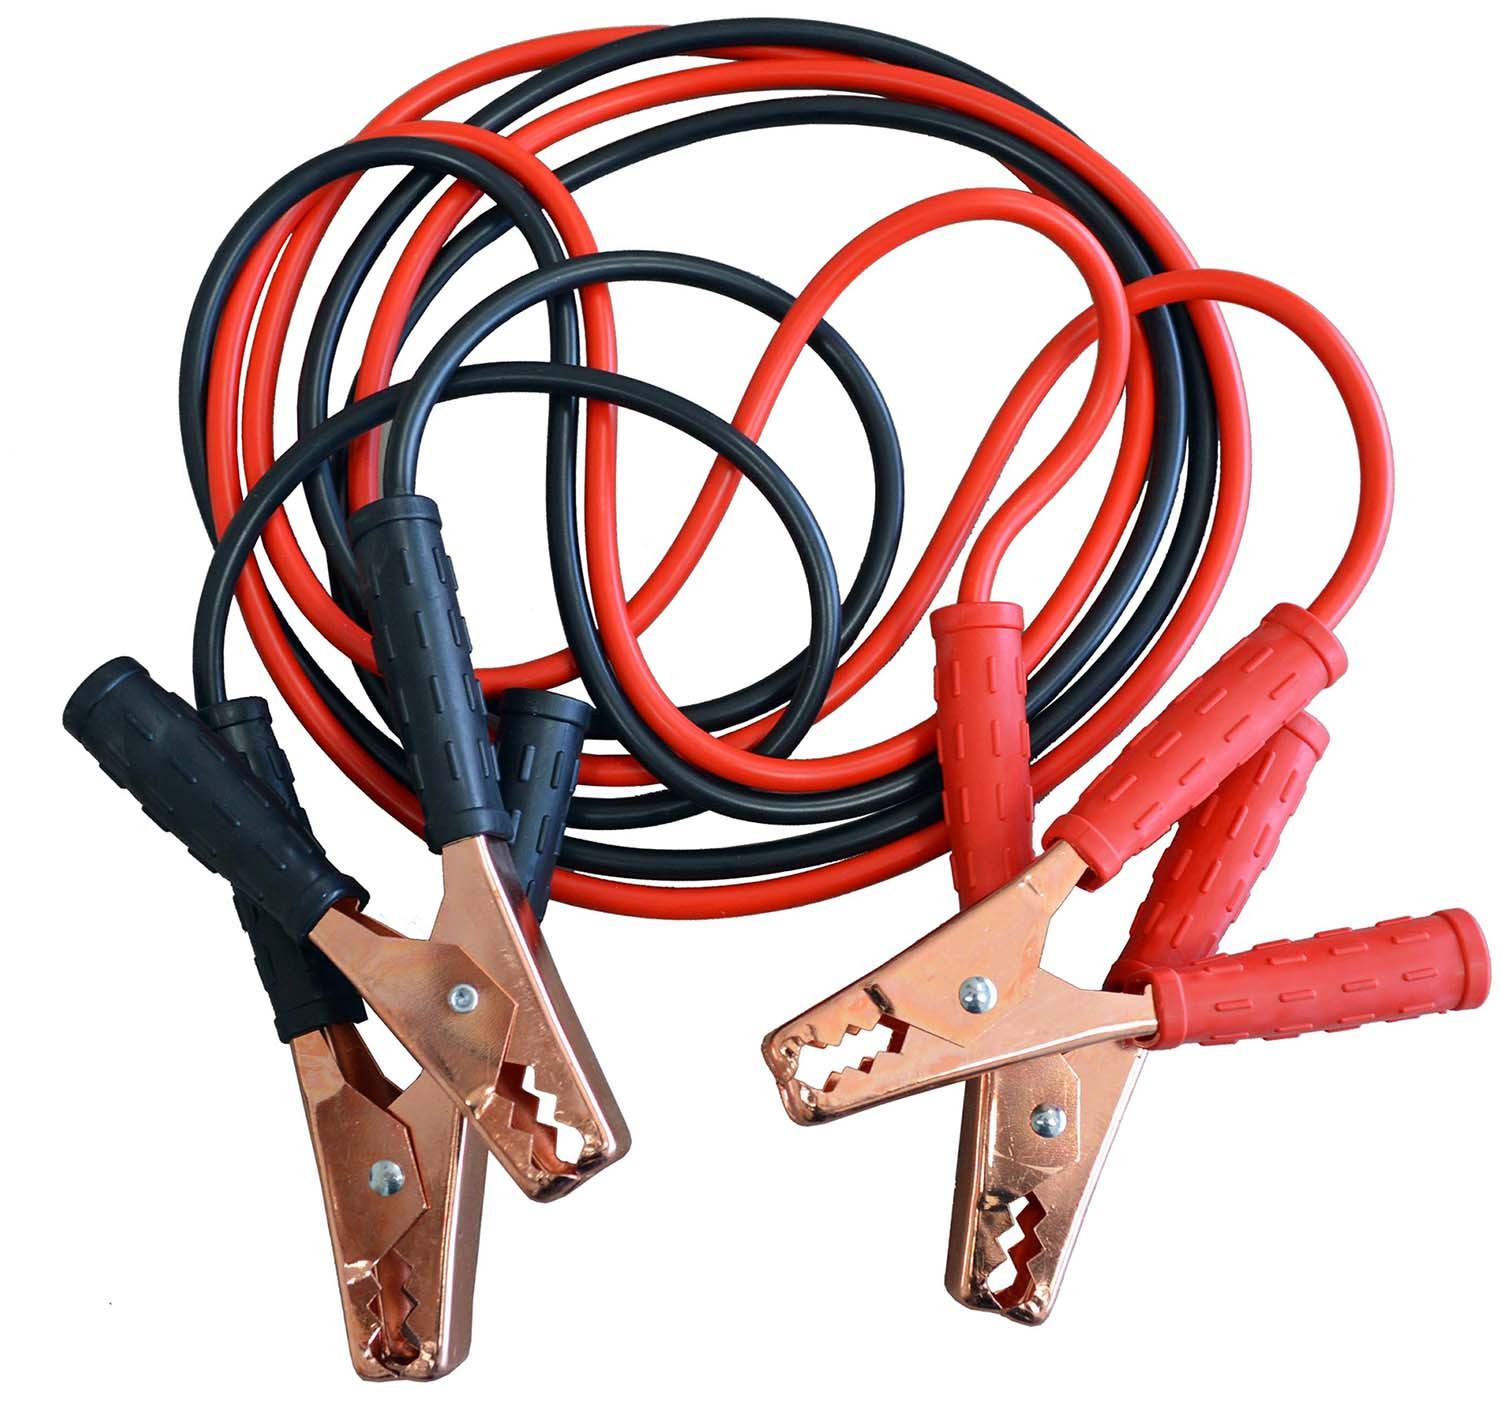 Cables de demarrage - 300 A max - 2,2 m - Noir/Rouge